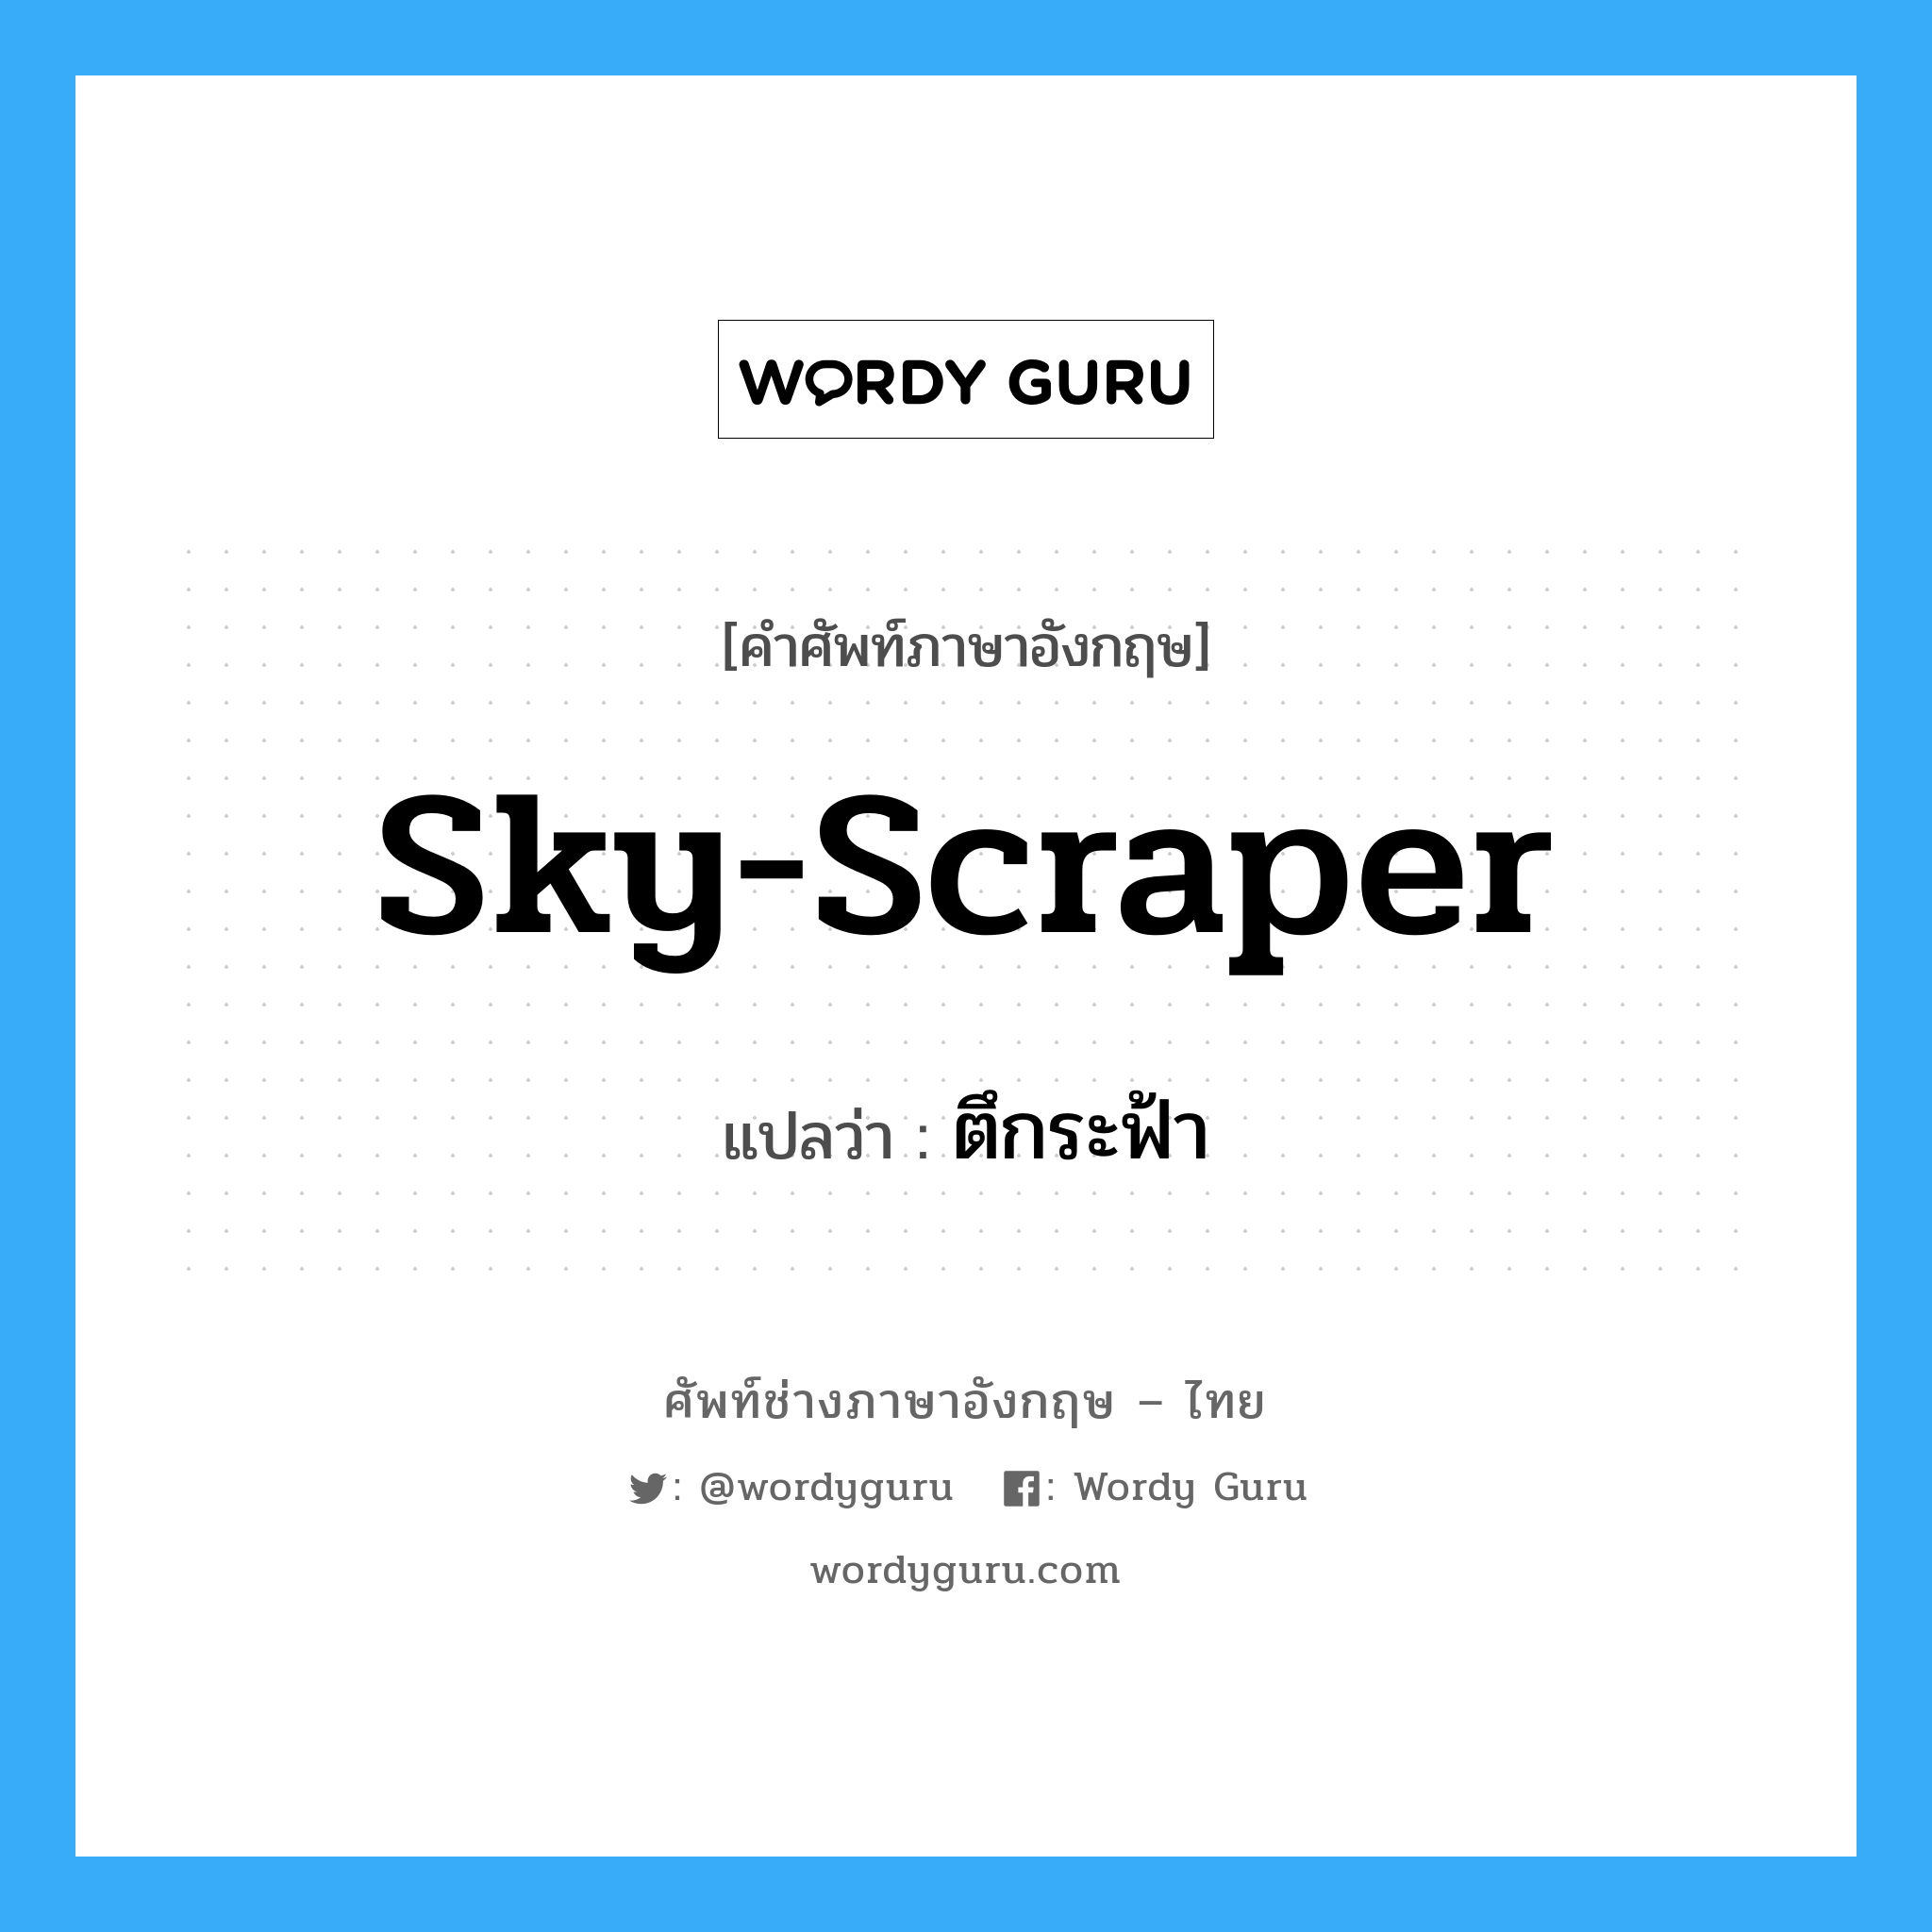 sky-scraper แปลว่า?, คำศัพท์ช่างภาษาอังกฤษ - ไทย sky-scraper คำศัพท์ภาษาอังกฤษ sky-scraper แปลว่า ตึกระฟ้า